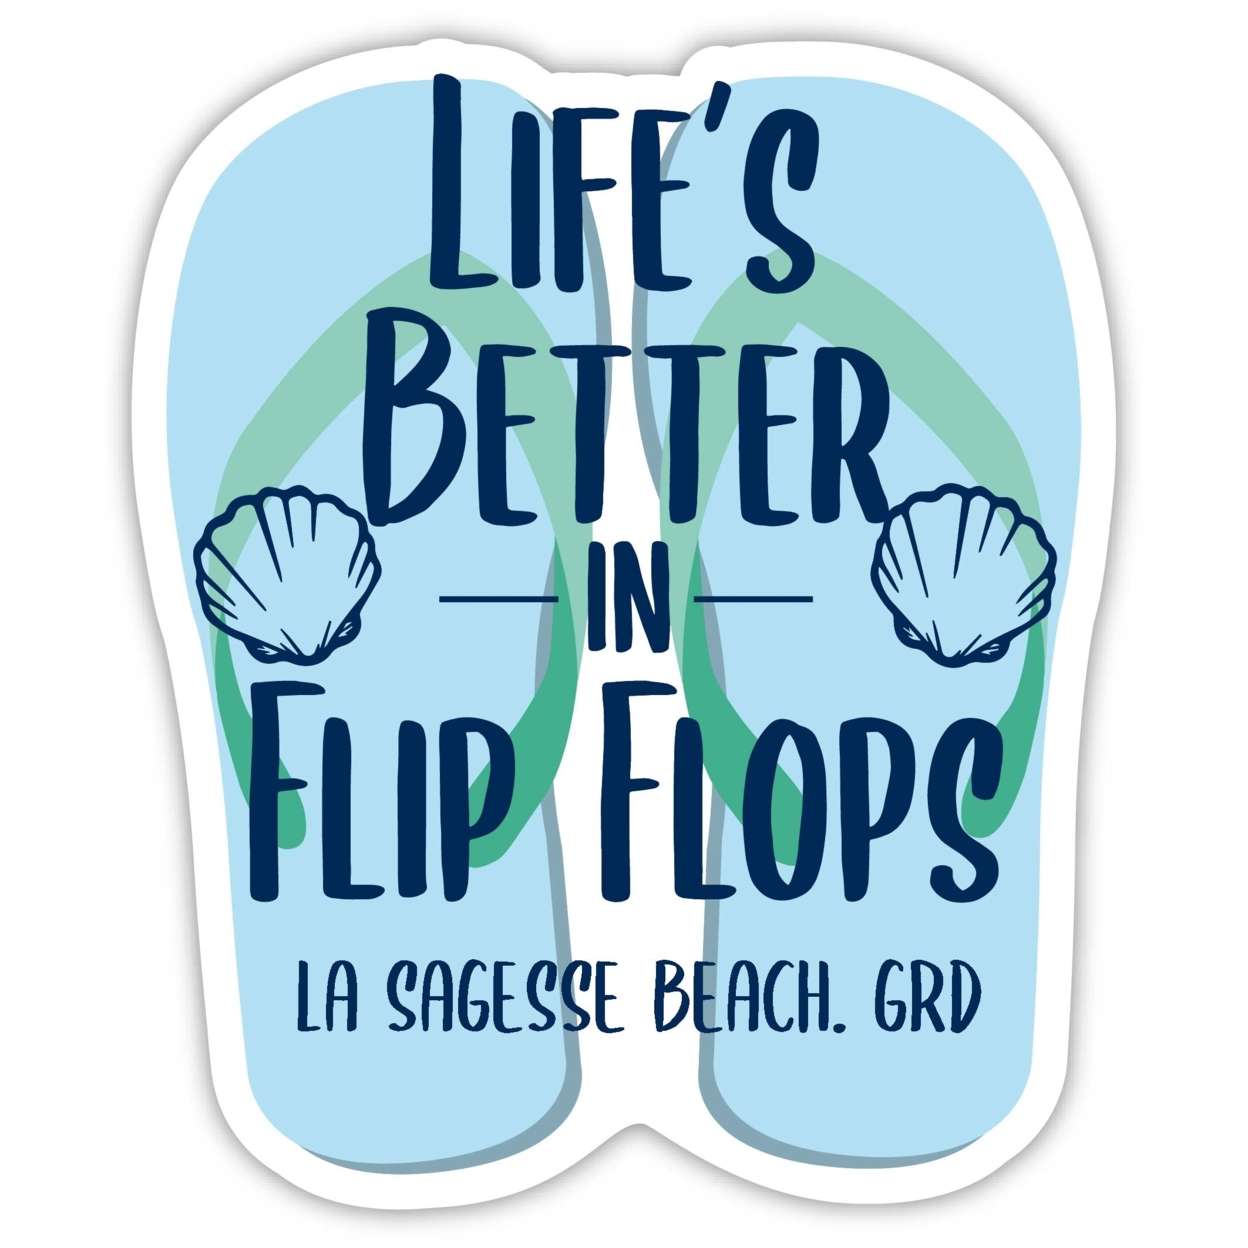 La Sagesse Beach Grenada Souvenir 4 Inch Vinyl Decal Sticker Flip Flop Design